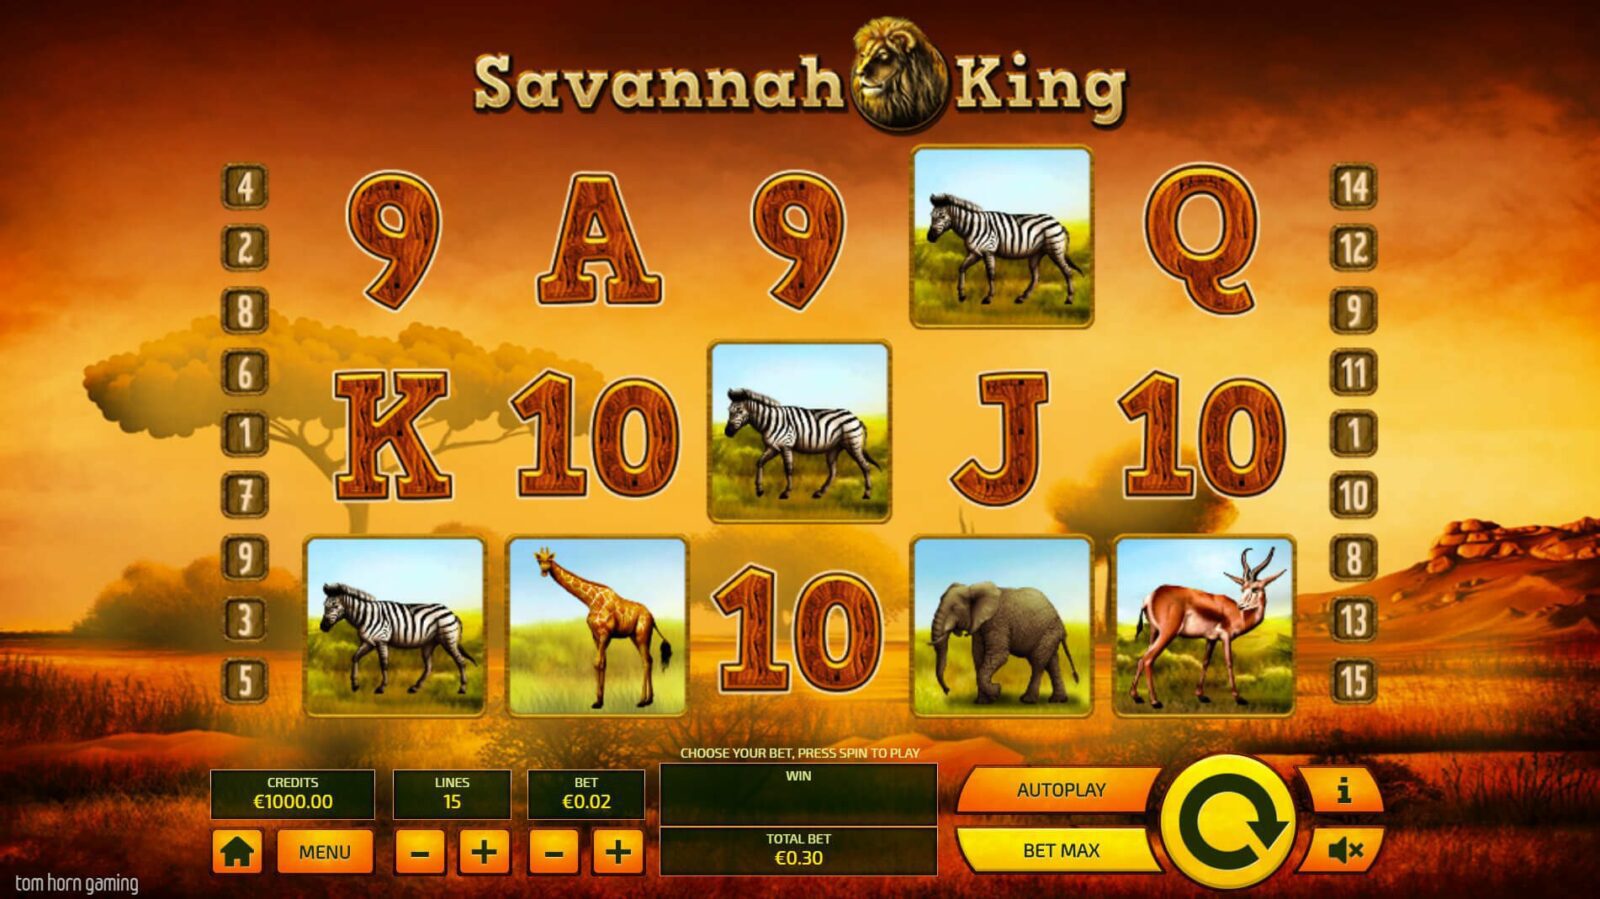 Savannah King reels